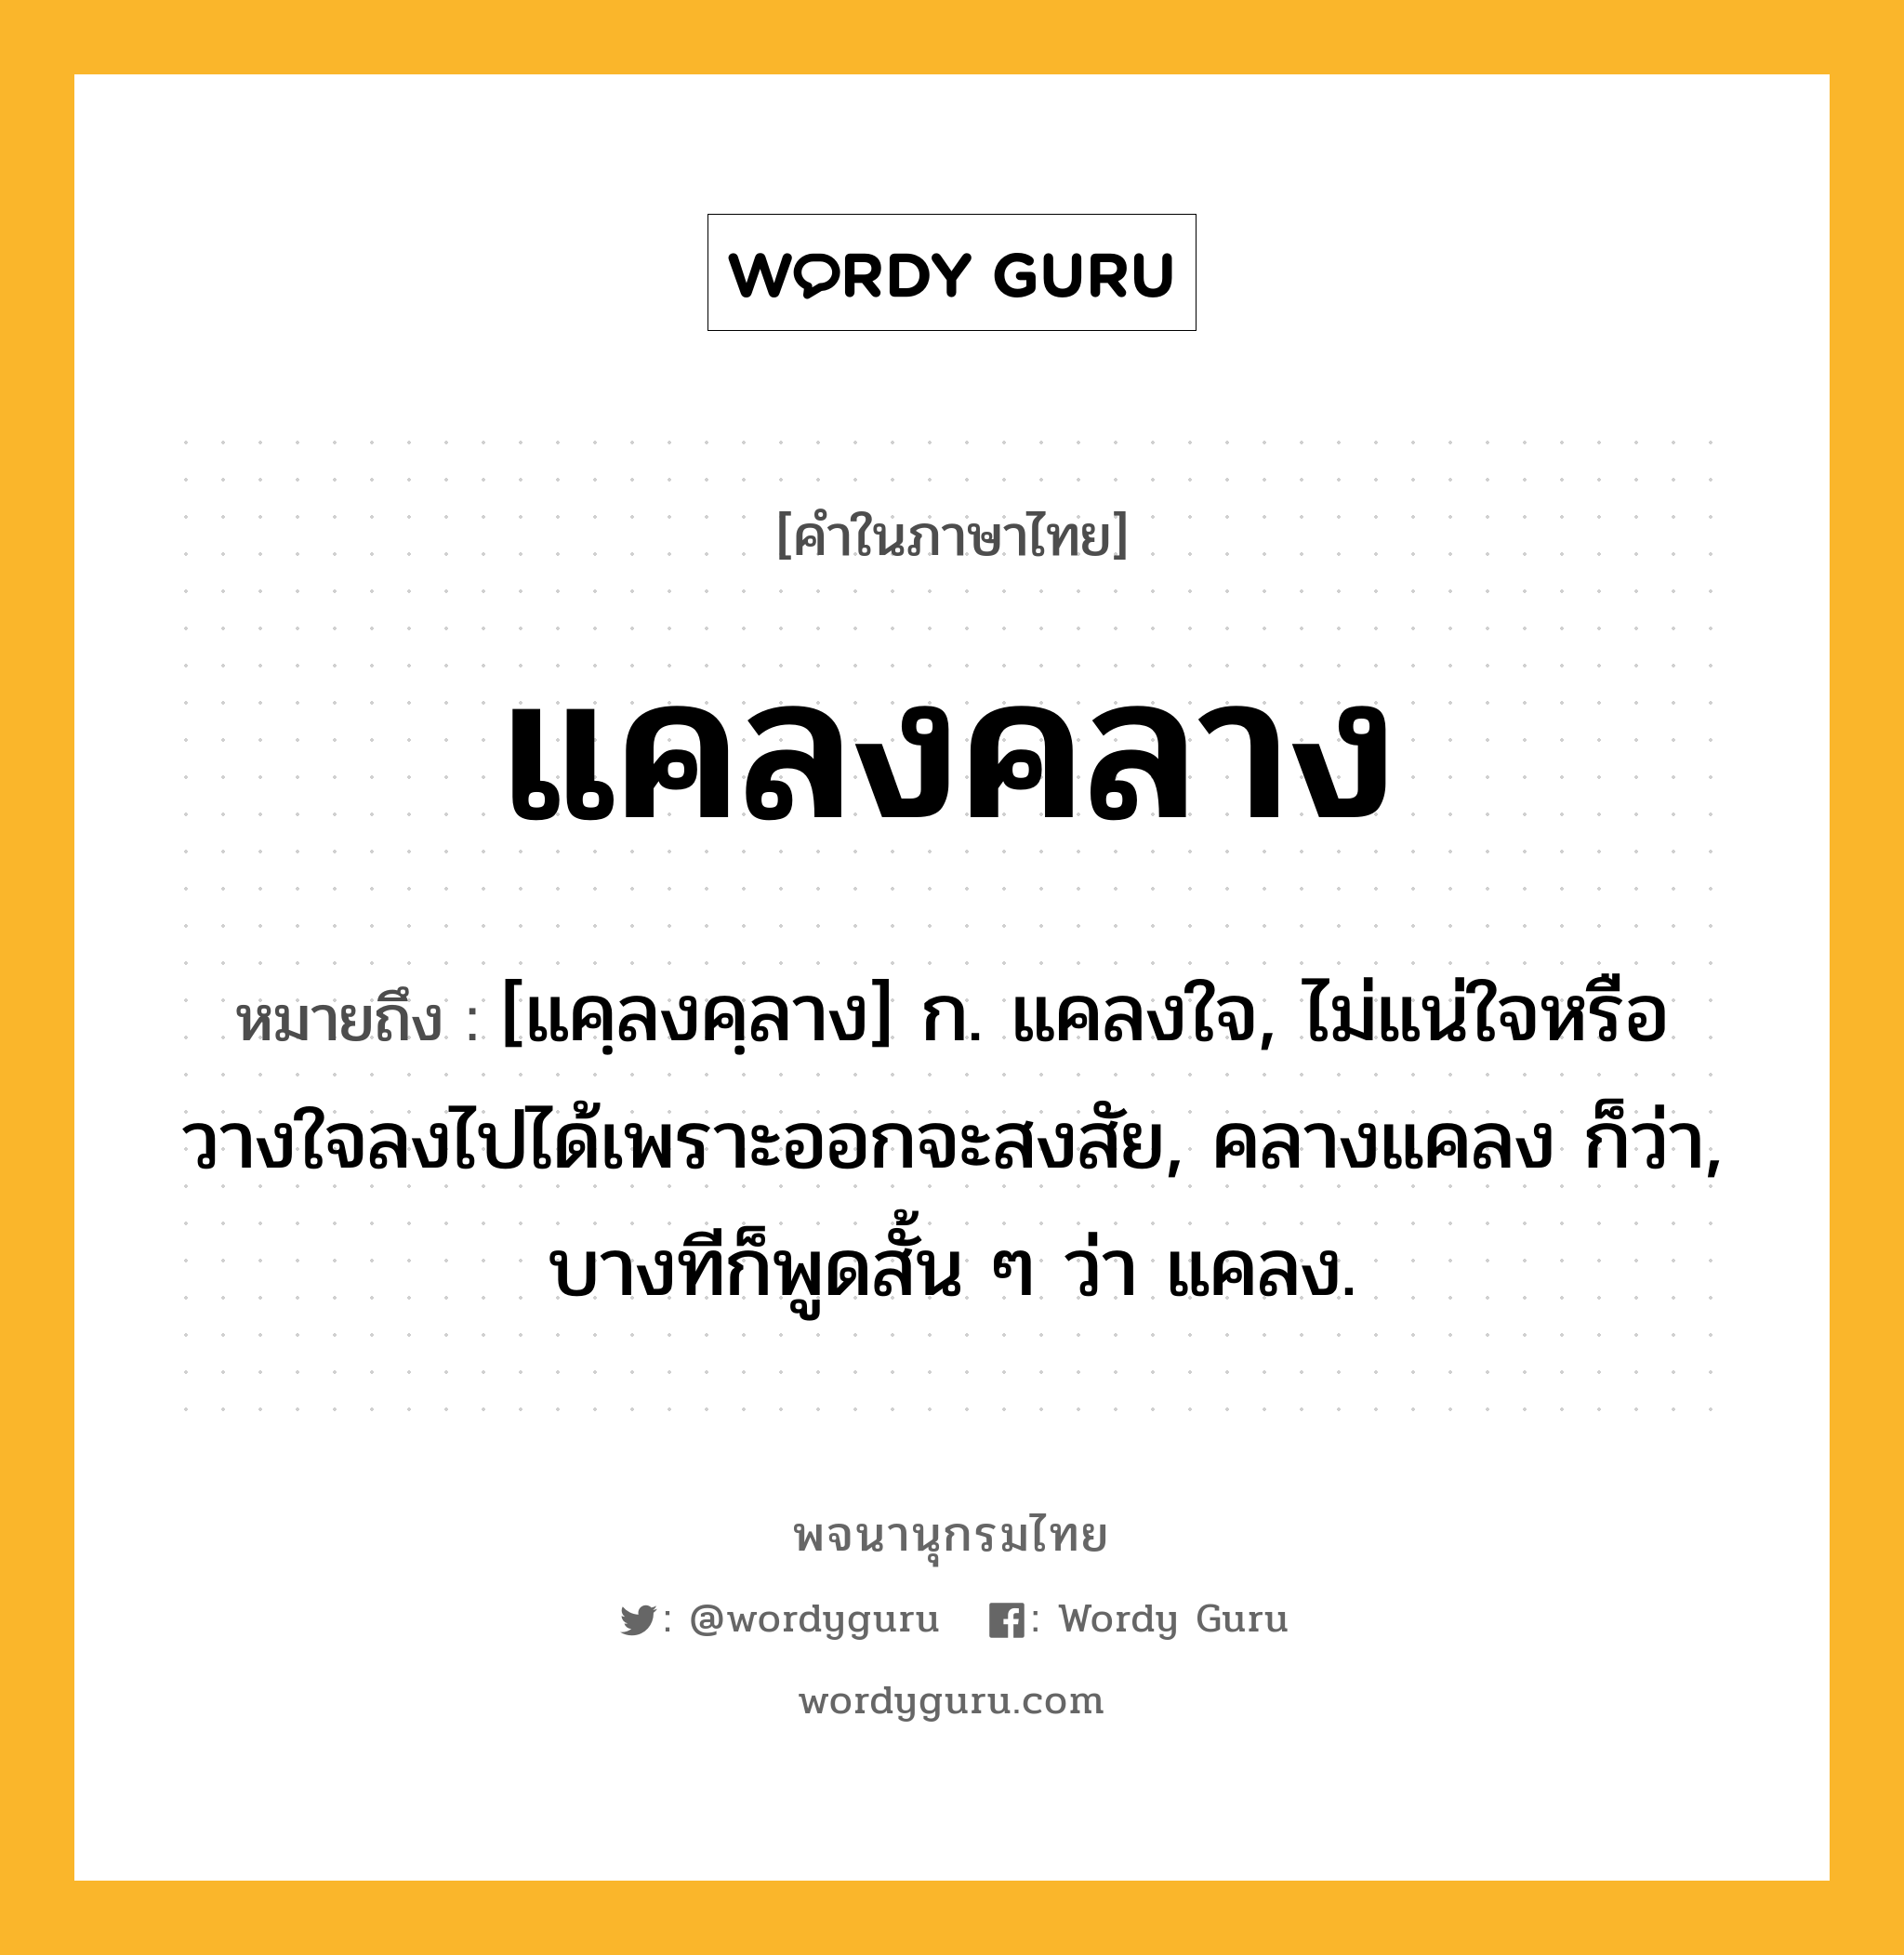 แคลงคลาง หมายถึงอะไร?, คำในภาษาไทย แคลงคลาง หมายถึง [แคฺลงคฺลาง] ก. แคลงใจ, ไม่แน่ใจหรือวางใจลงไปได้เพราะออกจะสงสัย, คลางแคลง ก็ว่า, บางทีก็พูดสั้น ๆ ว่า แคลง.